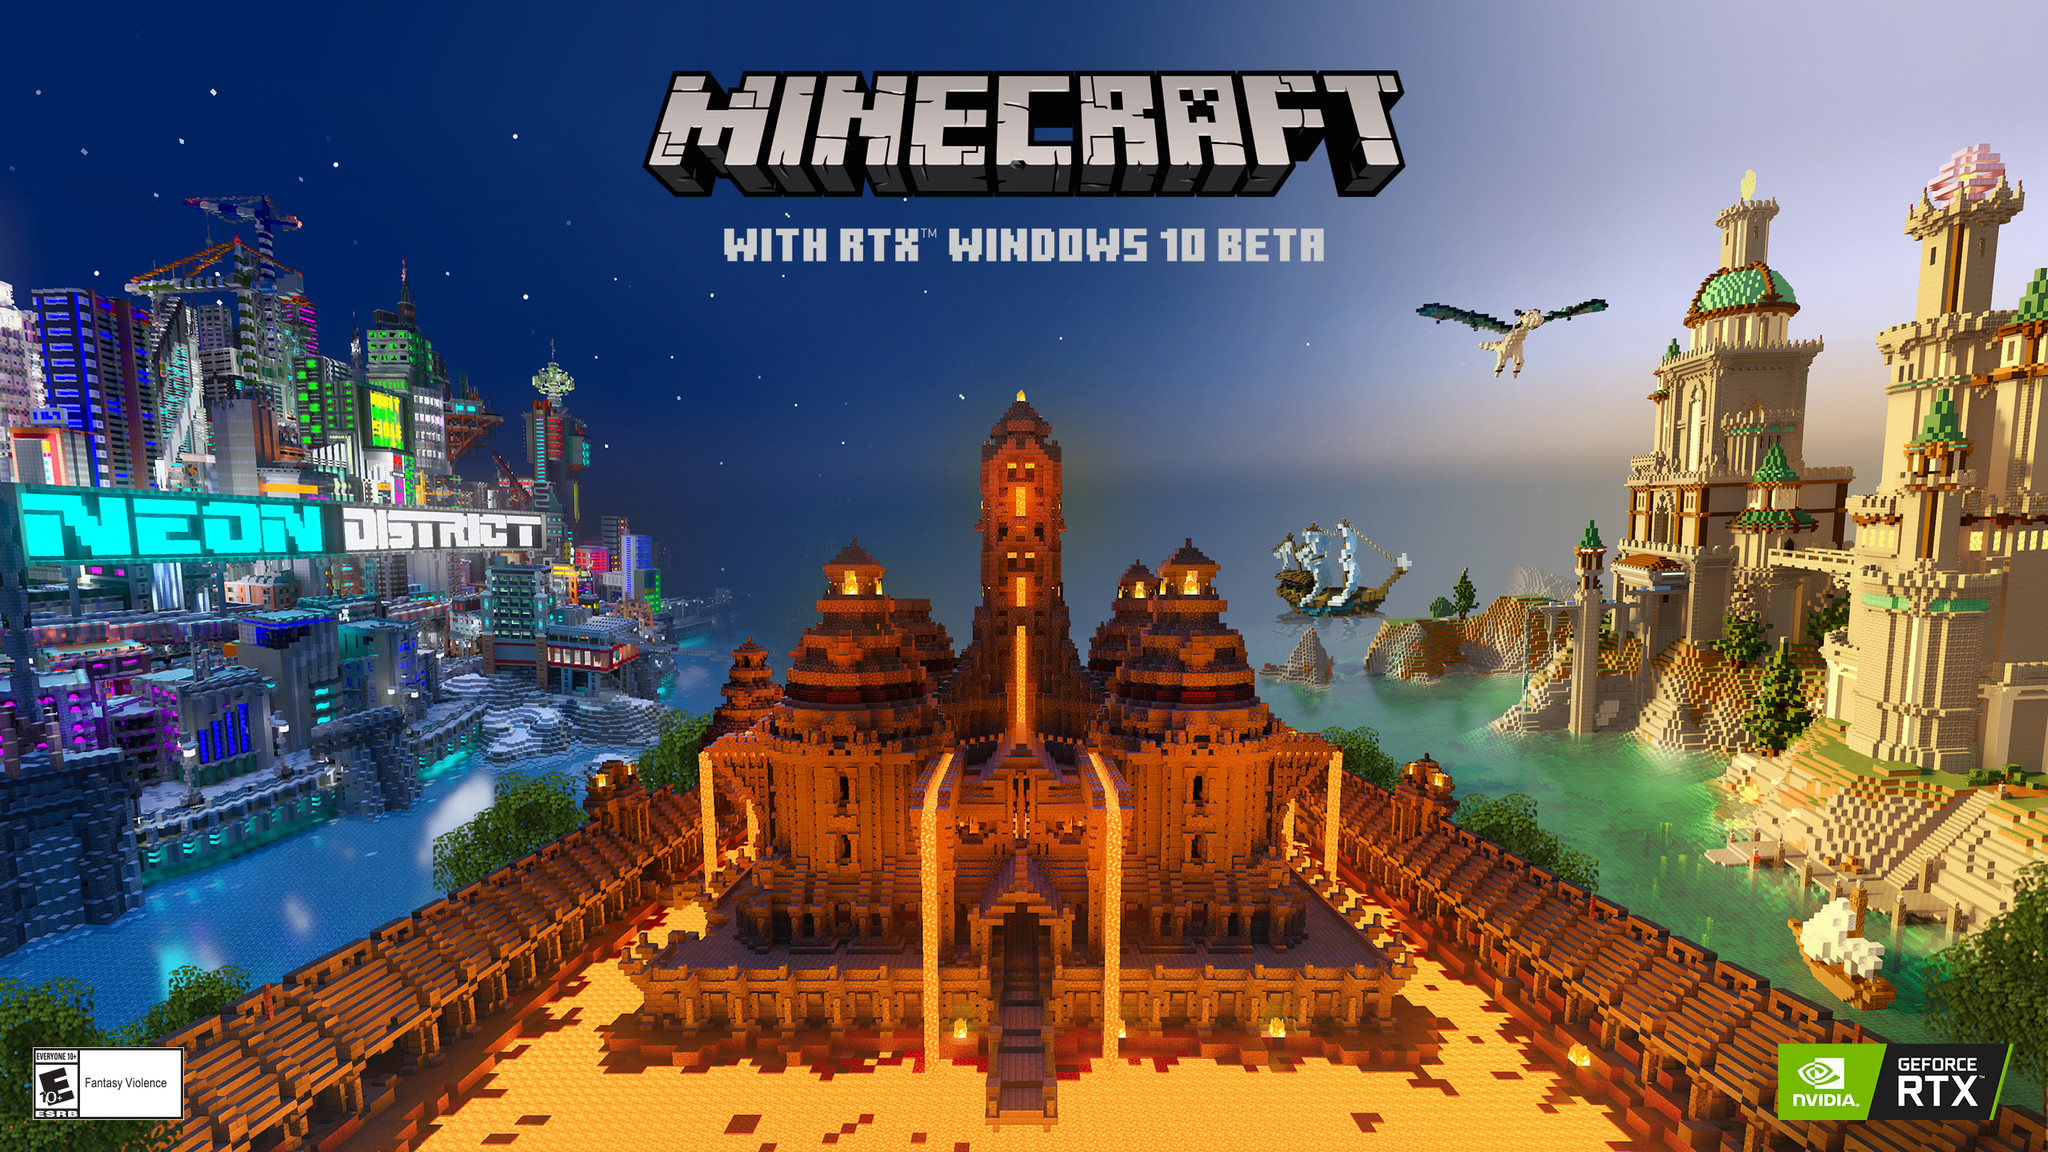 レイトレーシングによる圧倒的なビジュアルを世界中のゲーマーに届ける Minecraft With Rtx Windows Beta Nvidiaのプレスリリース